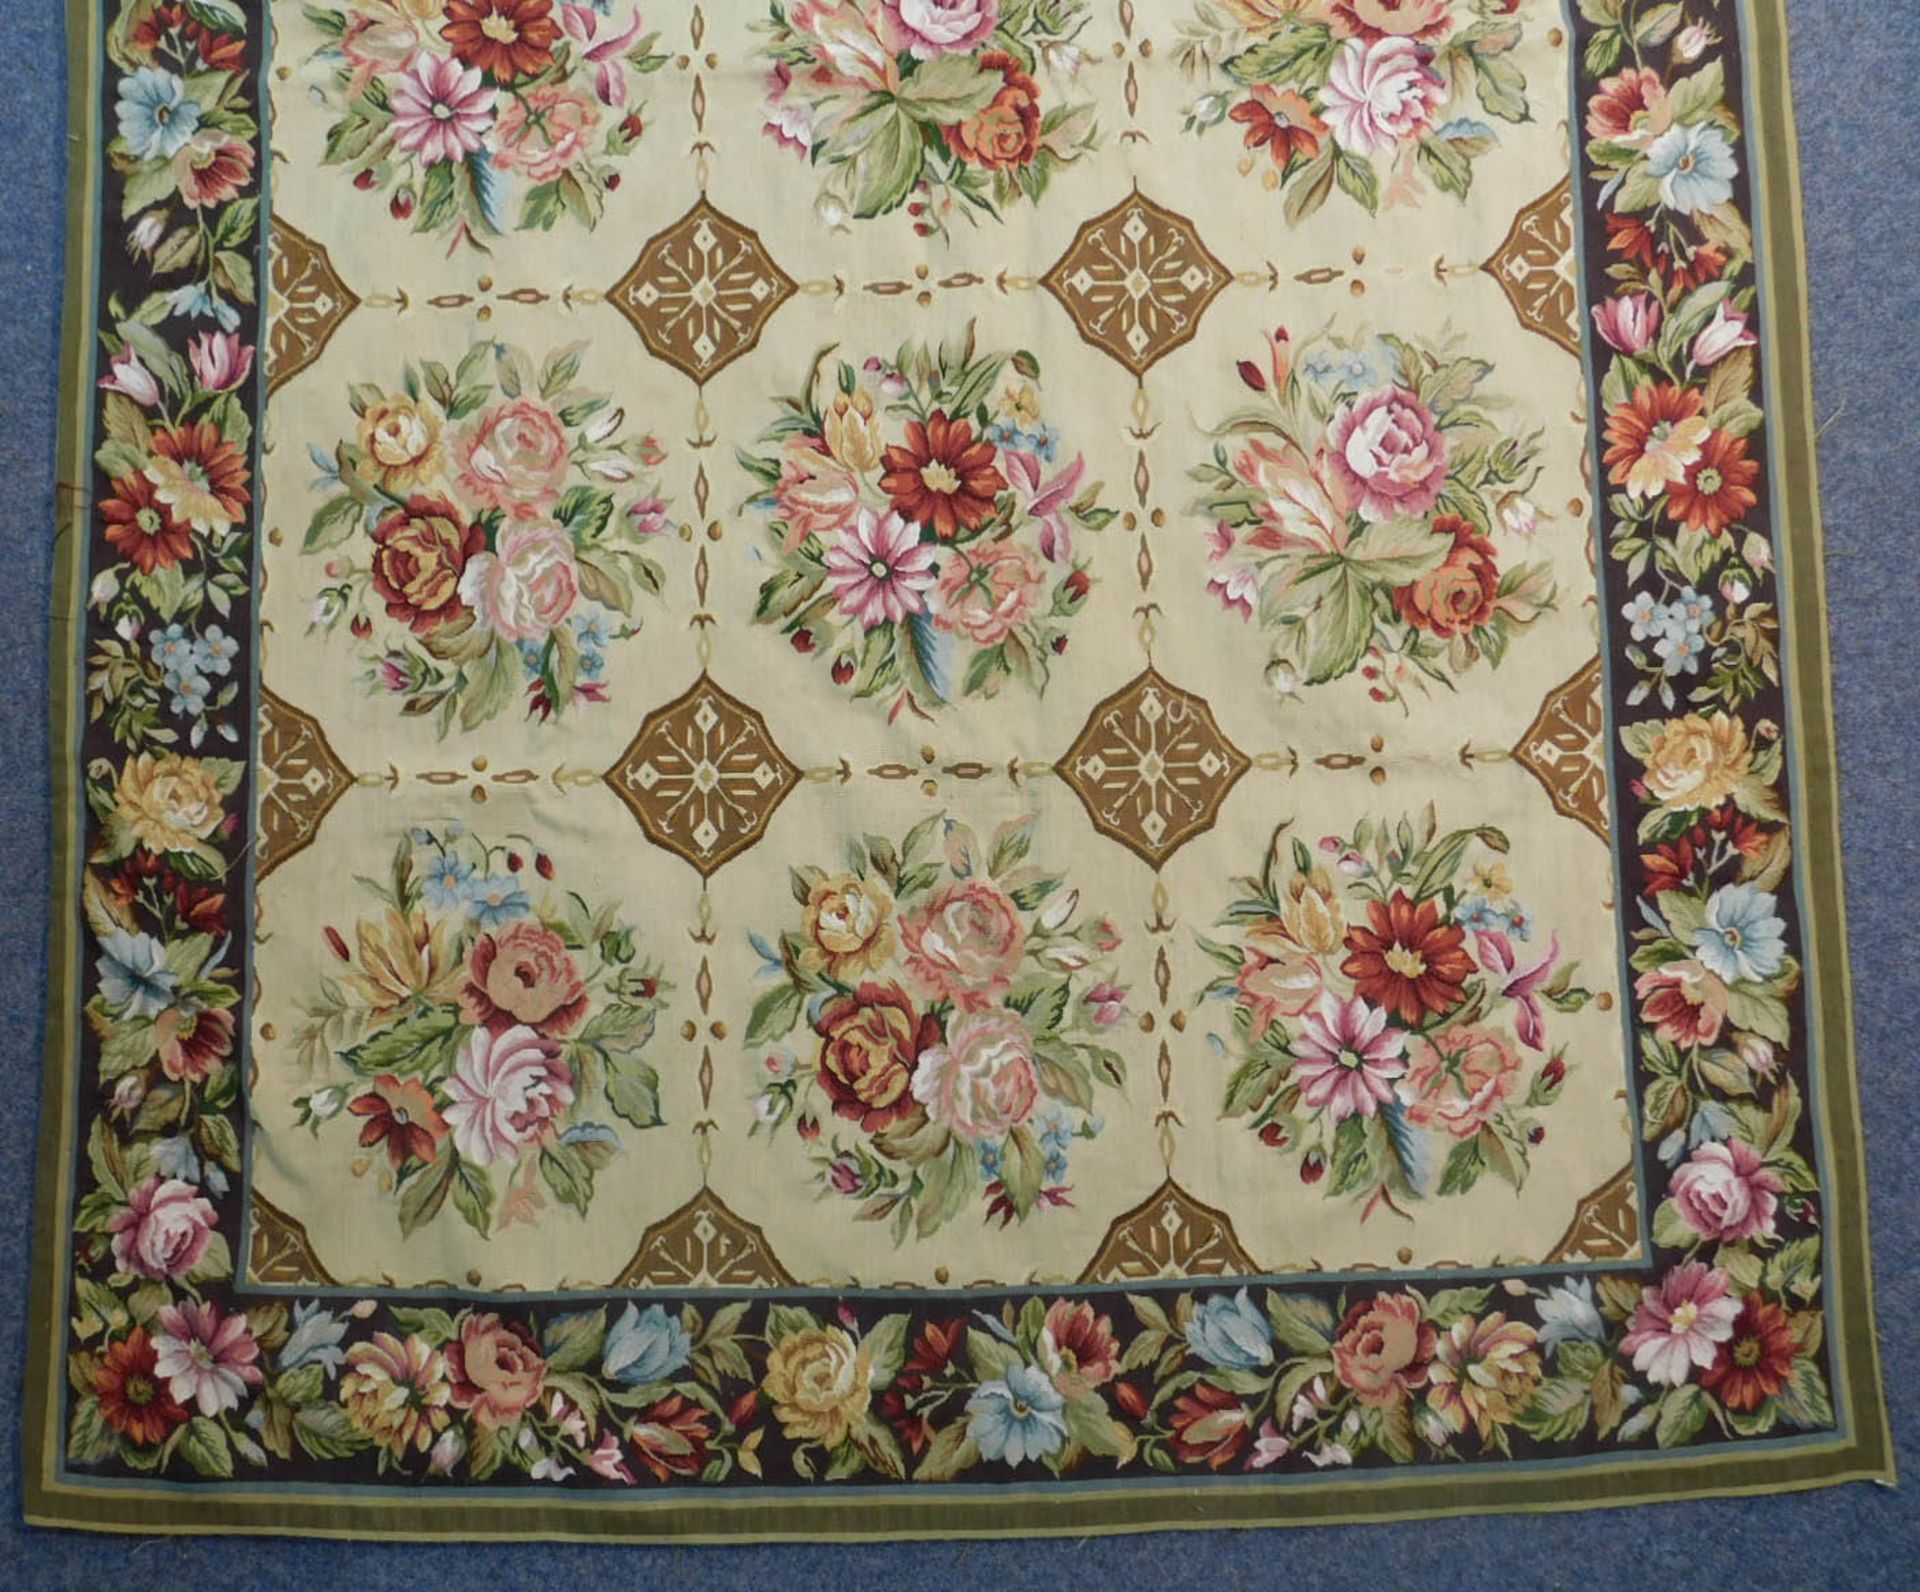 Teppich in Aubusson Technik und Louis XVI Stil. - Bild 2 aus 6